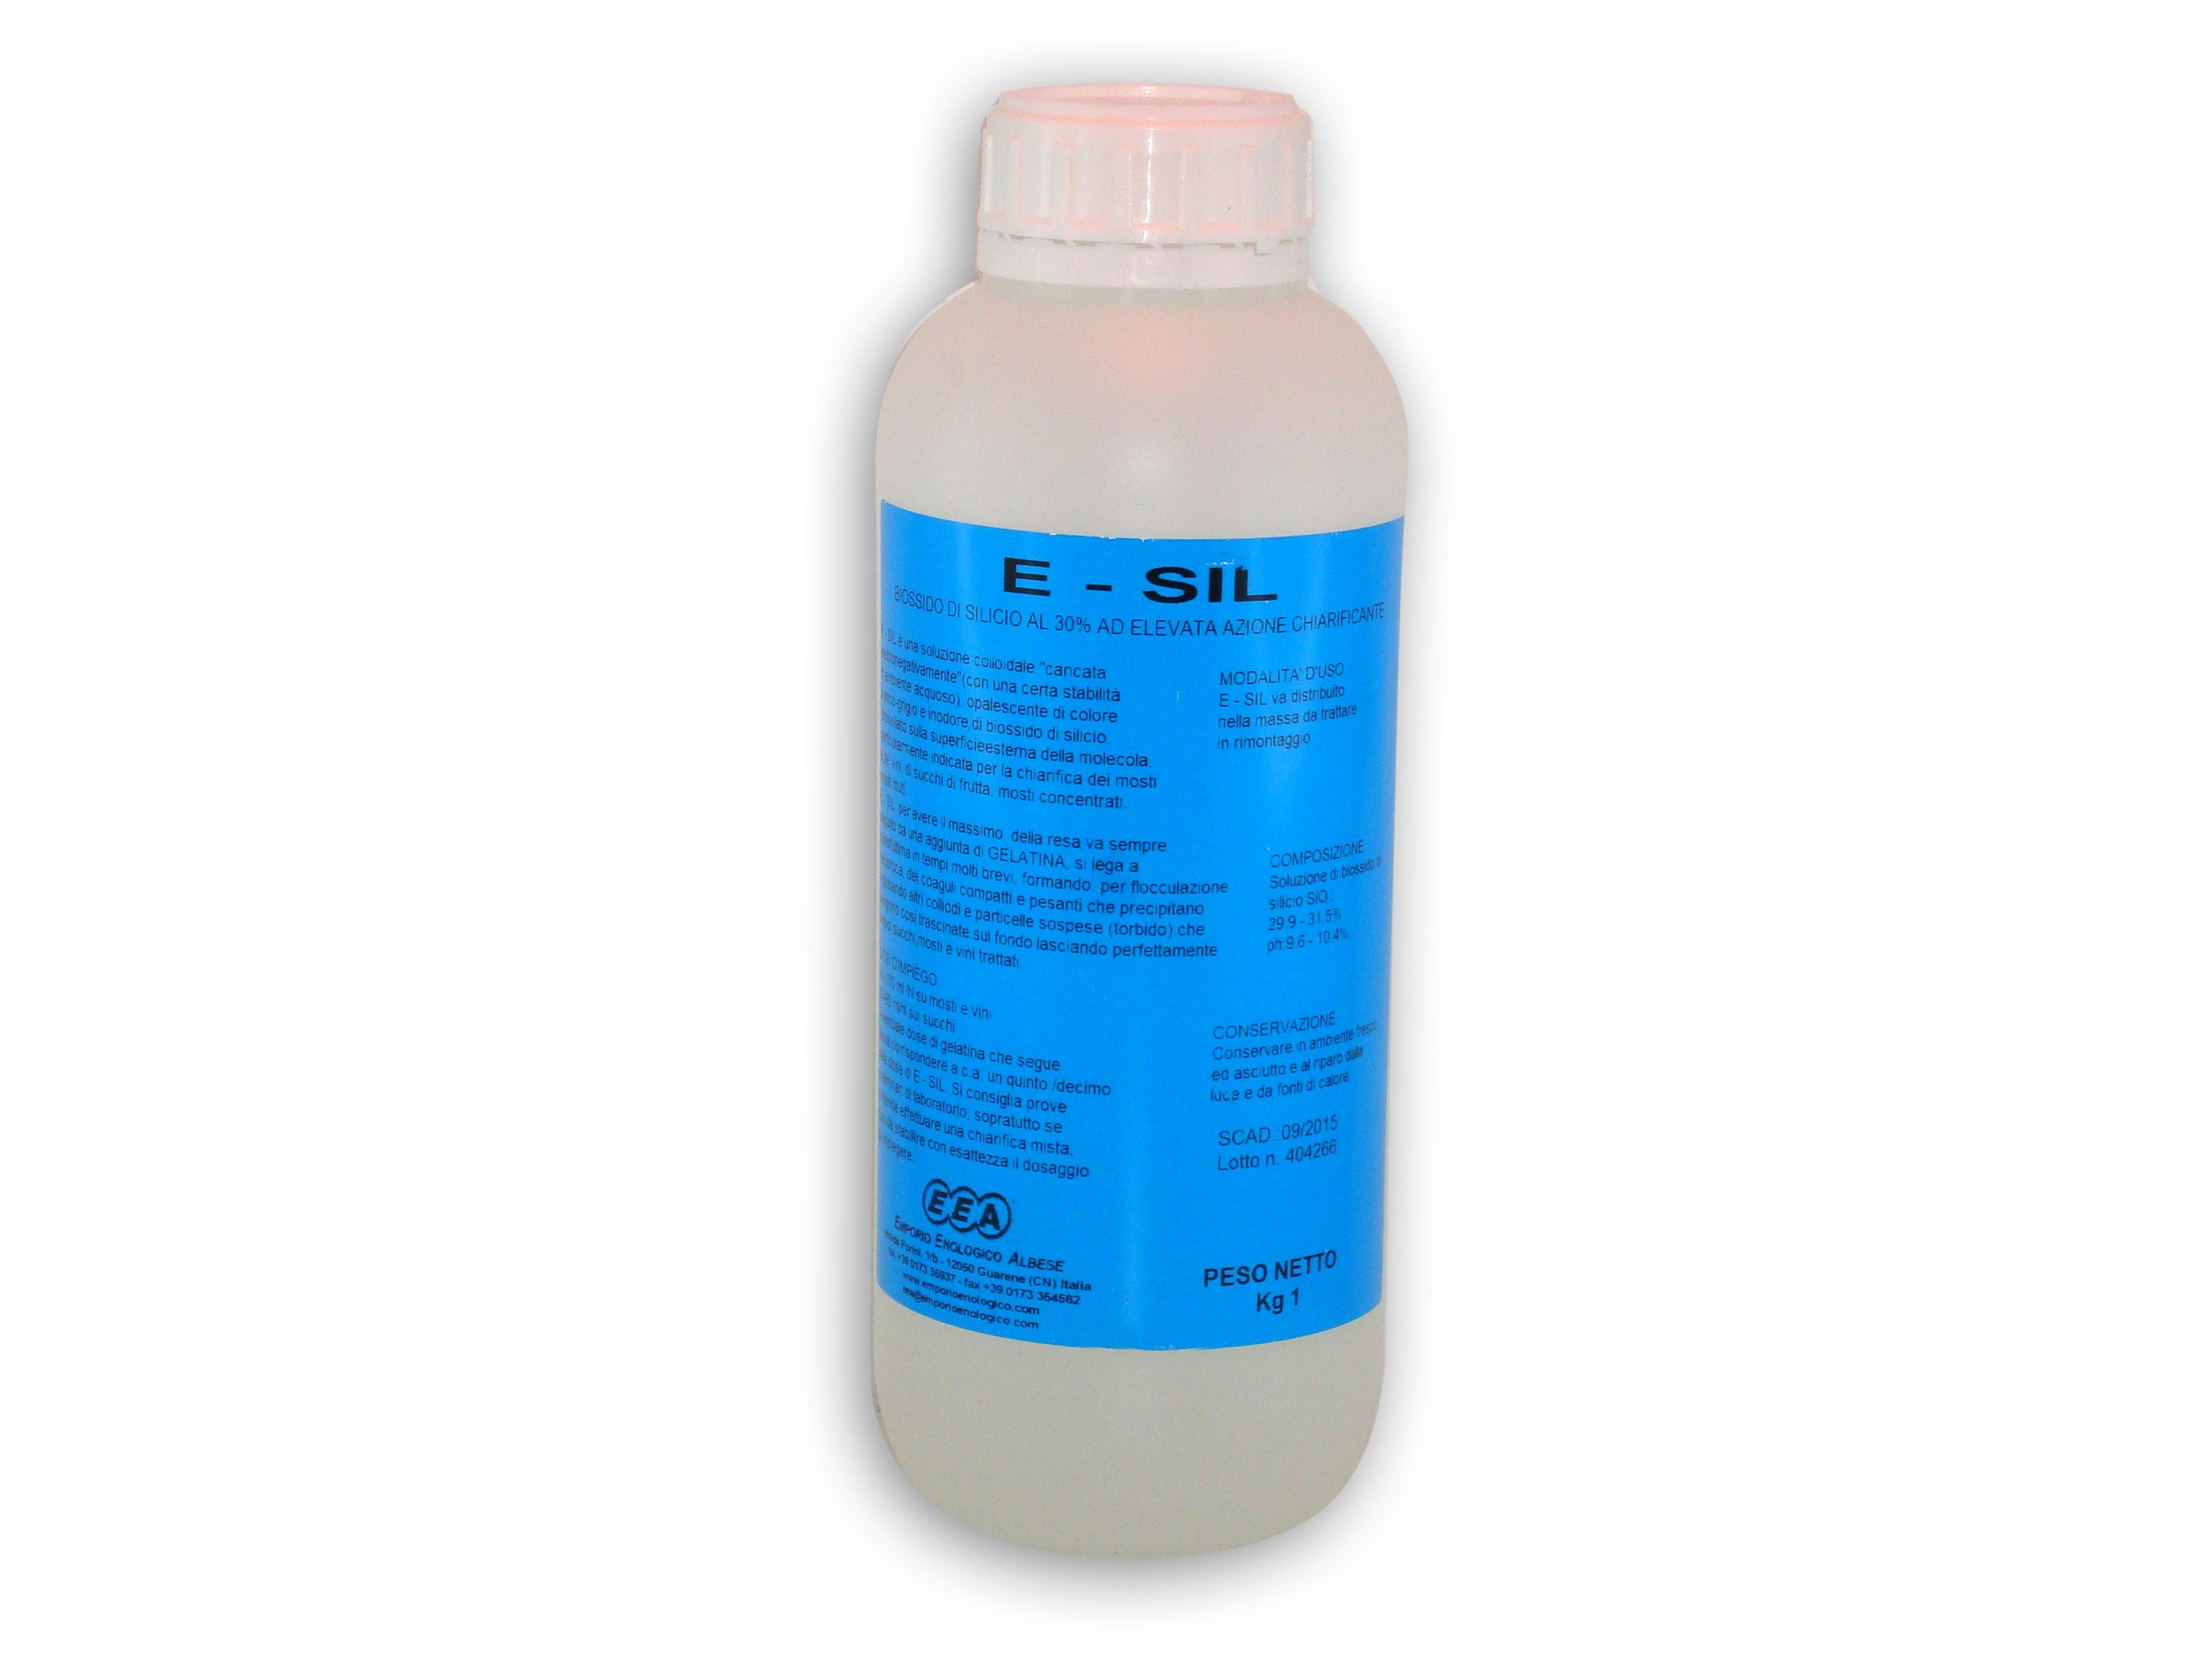 E-sil Silicon dioxide sand